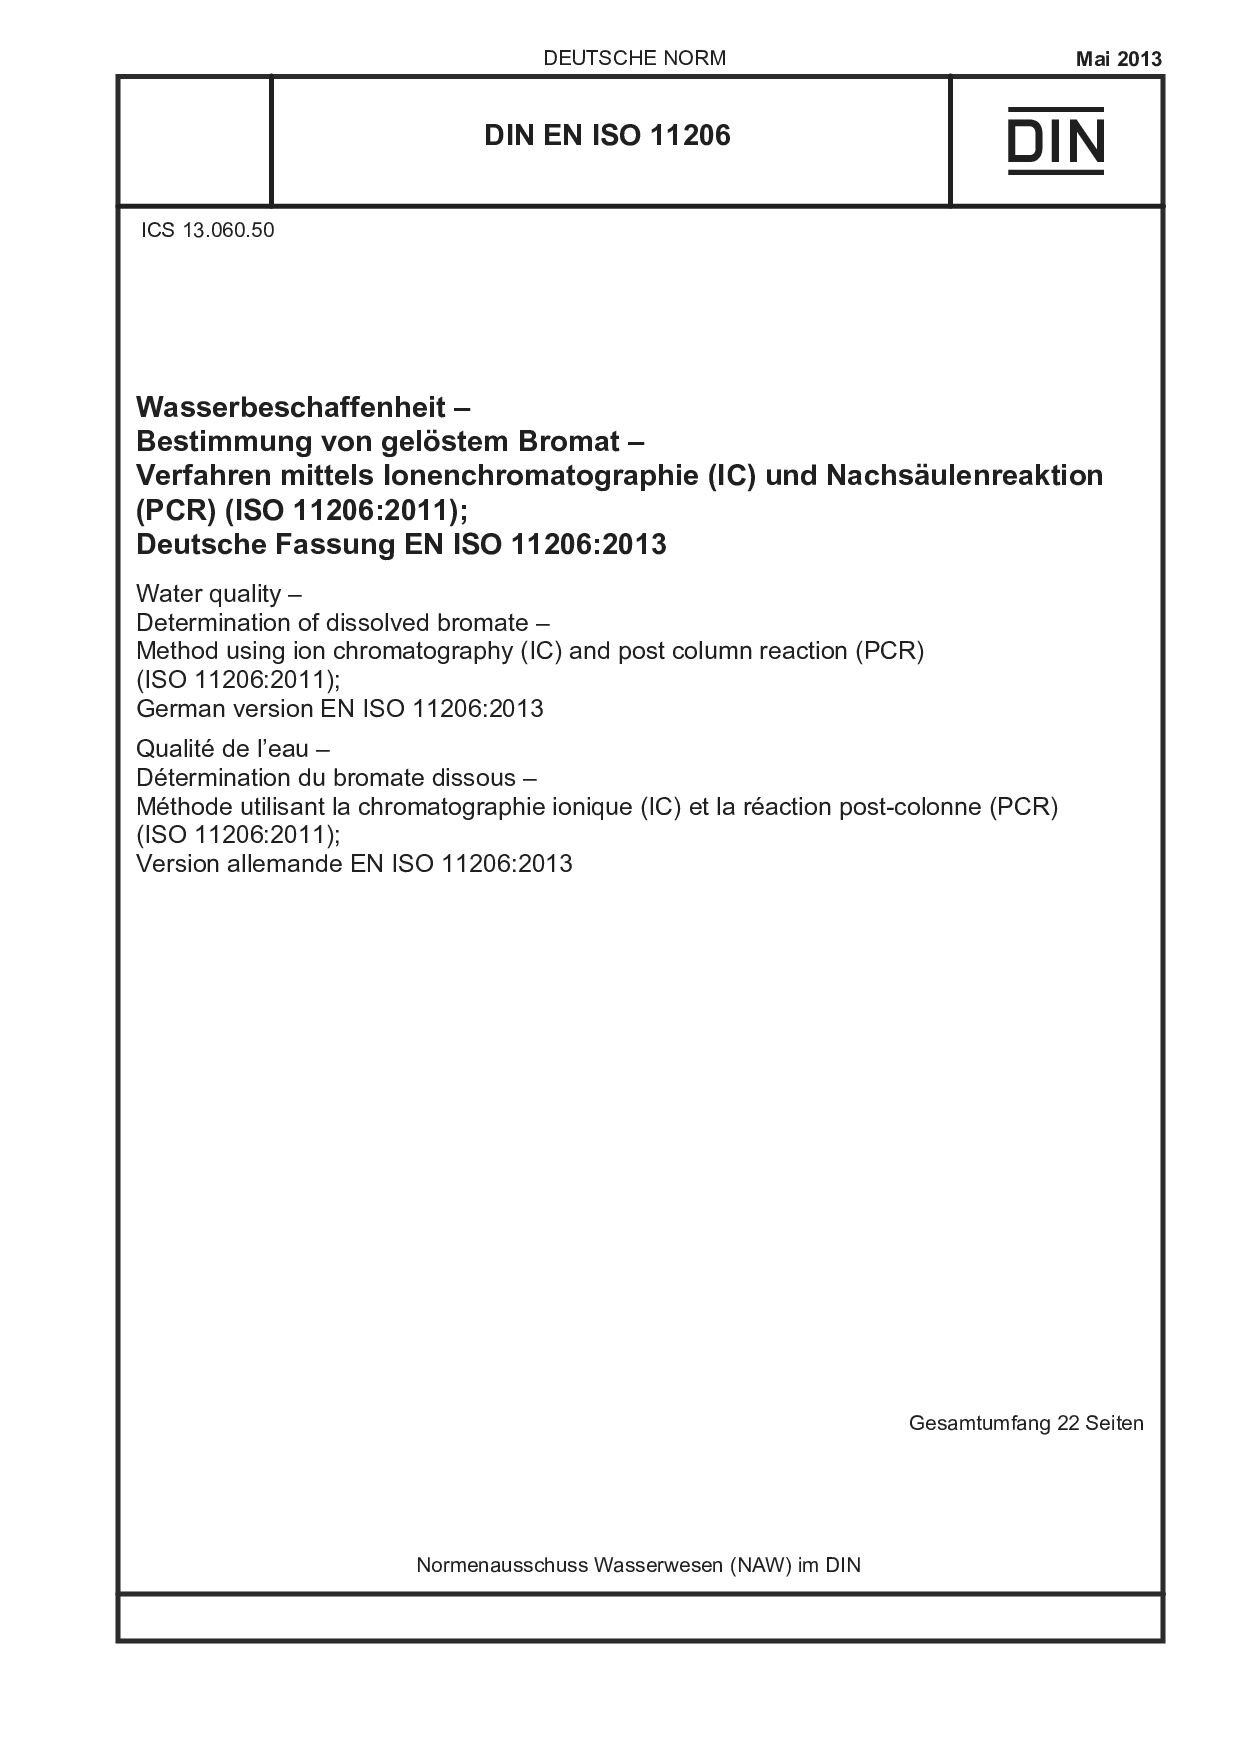 DIN EN ISO 11206:2013封面图